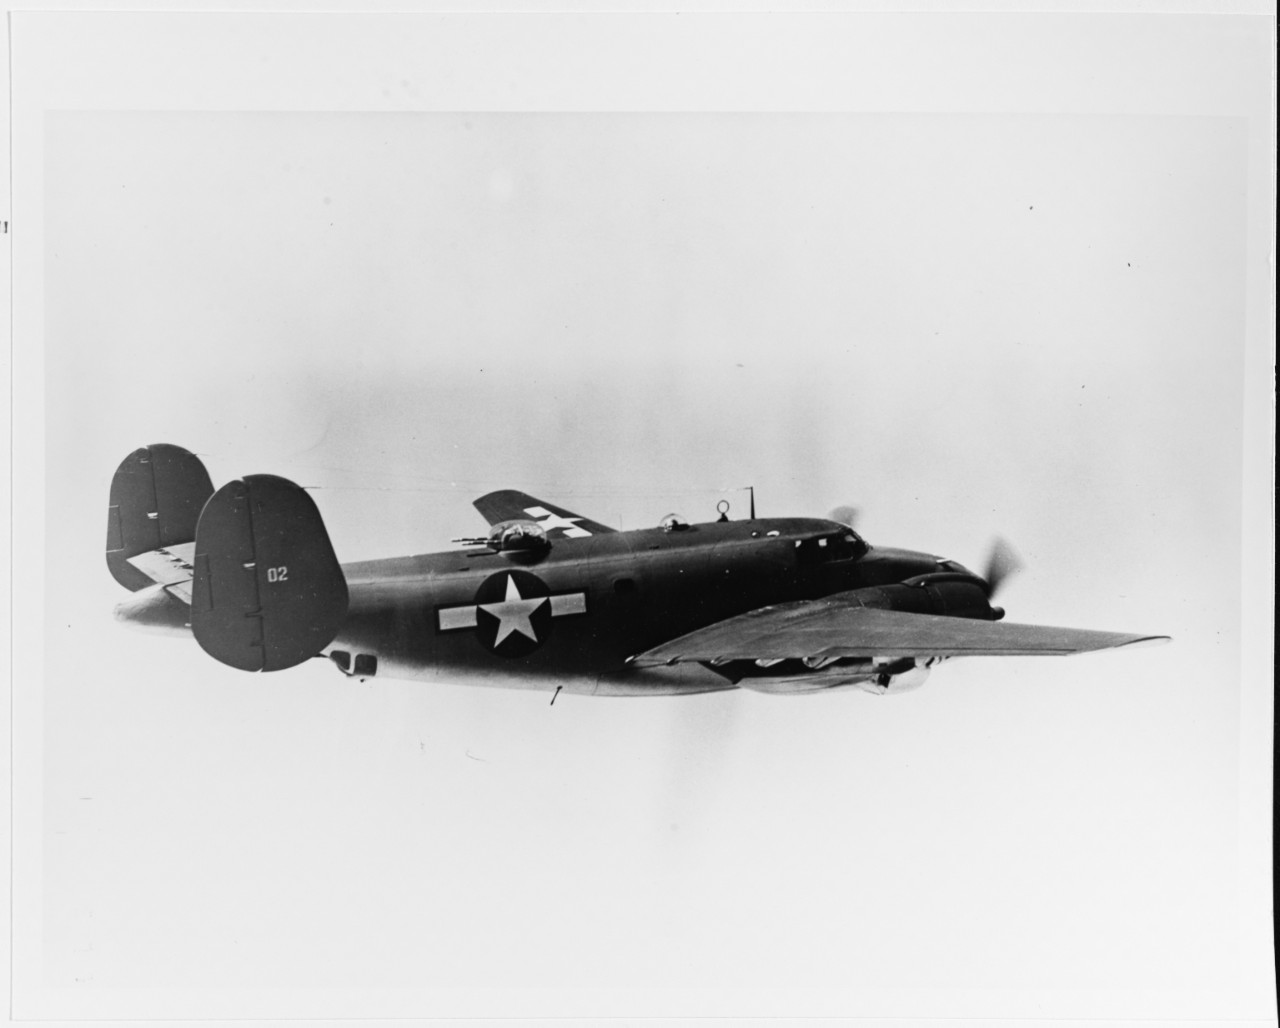 Lockheed PV-2 Harpoon Patrol Plane